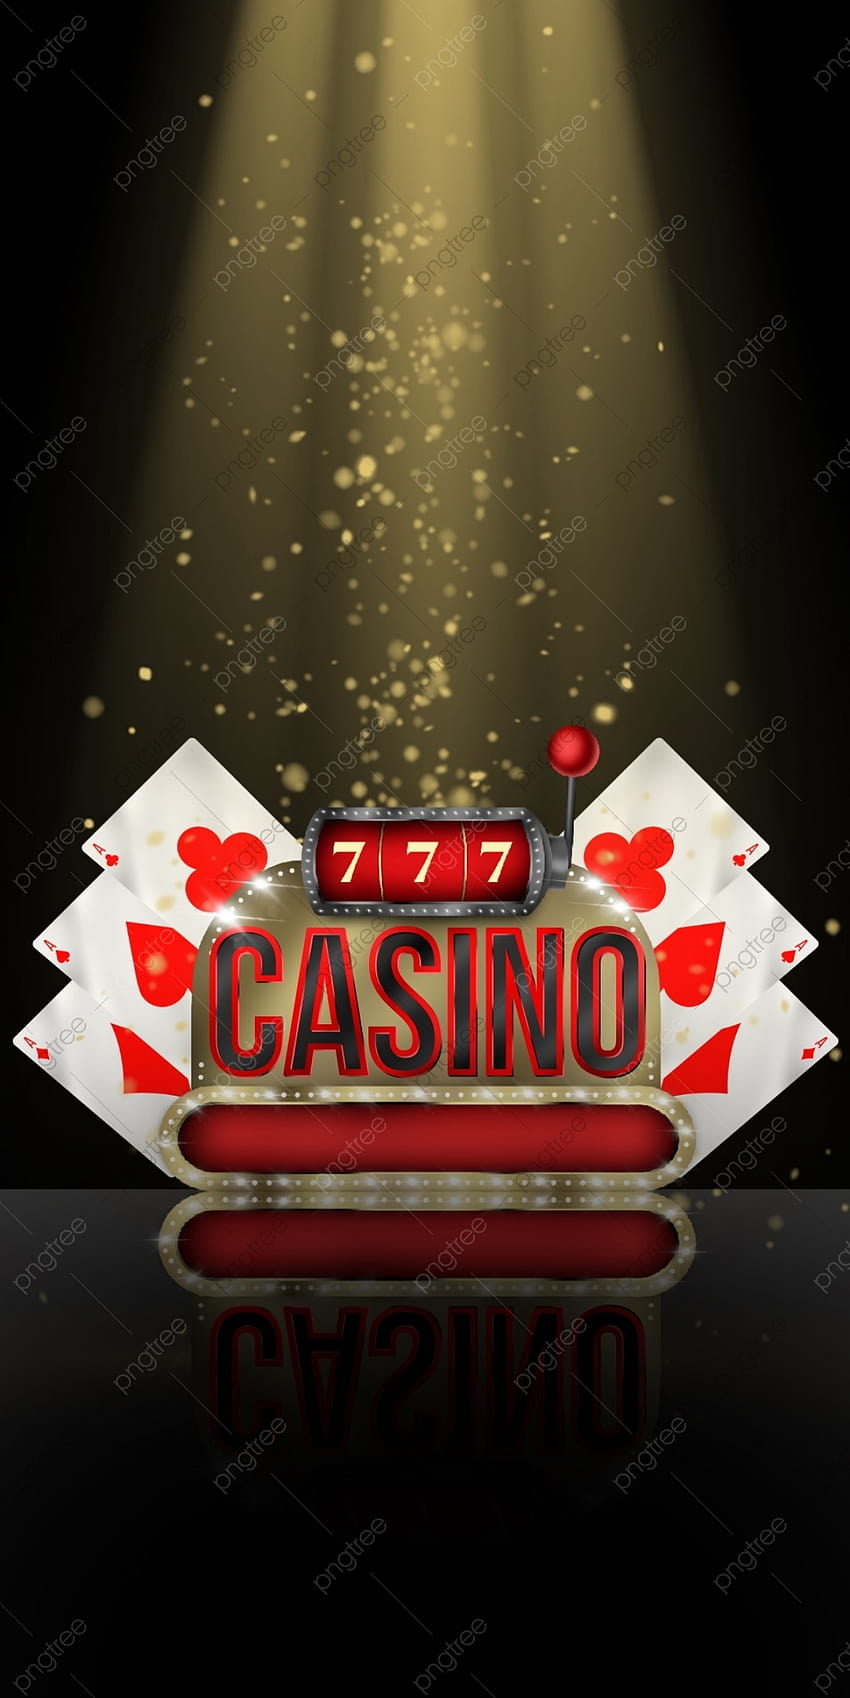 Juego de casino con de máquina de juego, fichas de casino, juegos de casino, s de s de casino para, teléfono de juego fondo de pantalla del teléfono